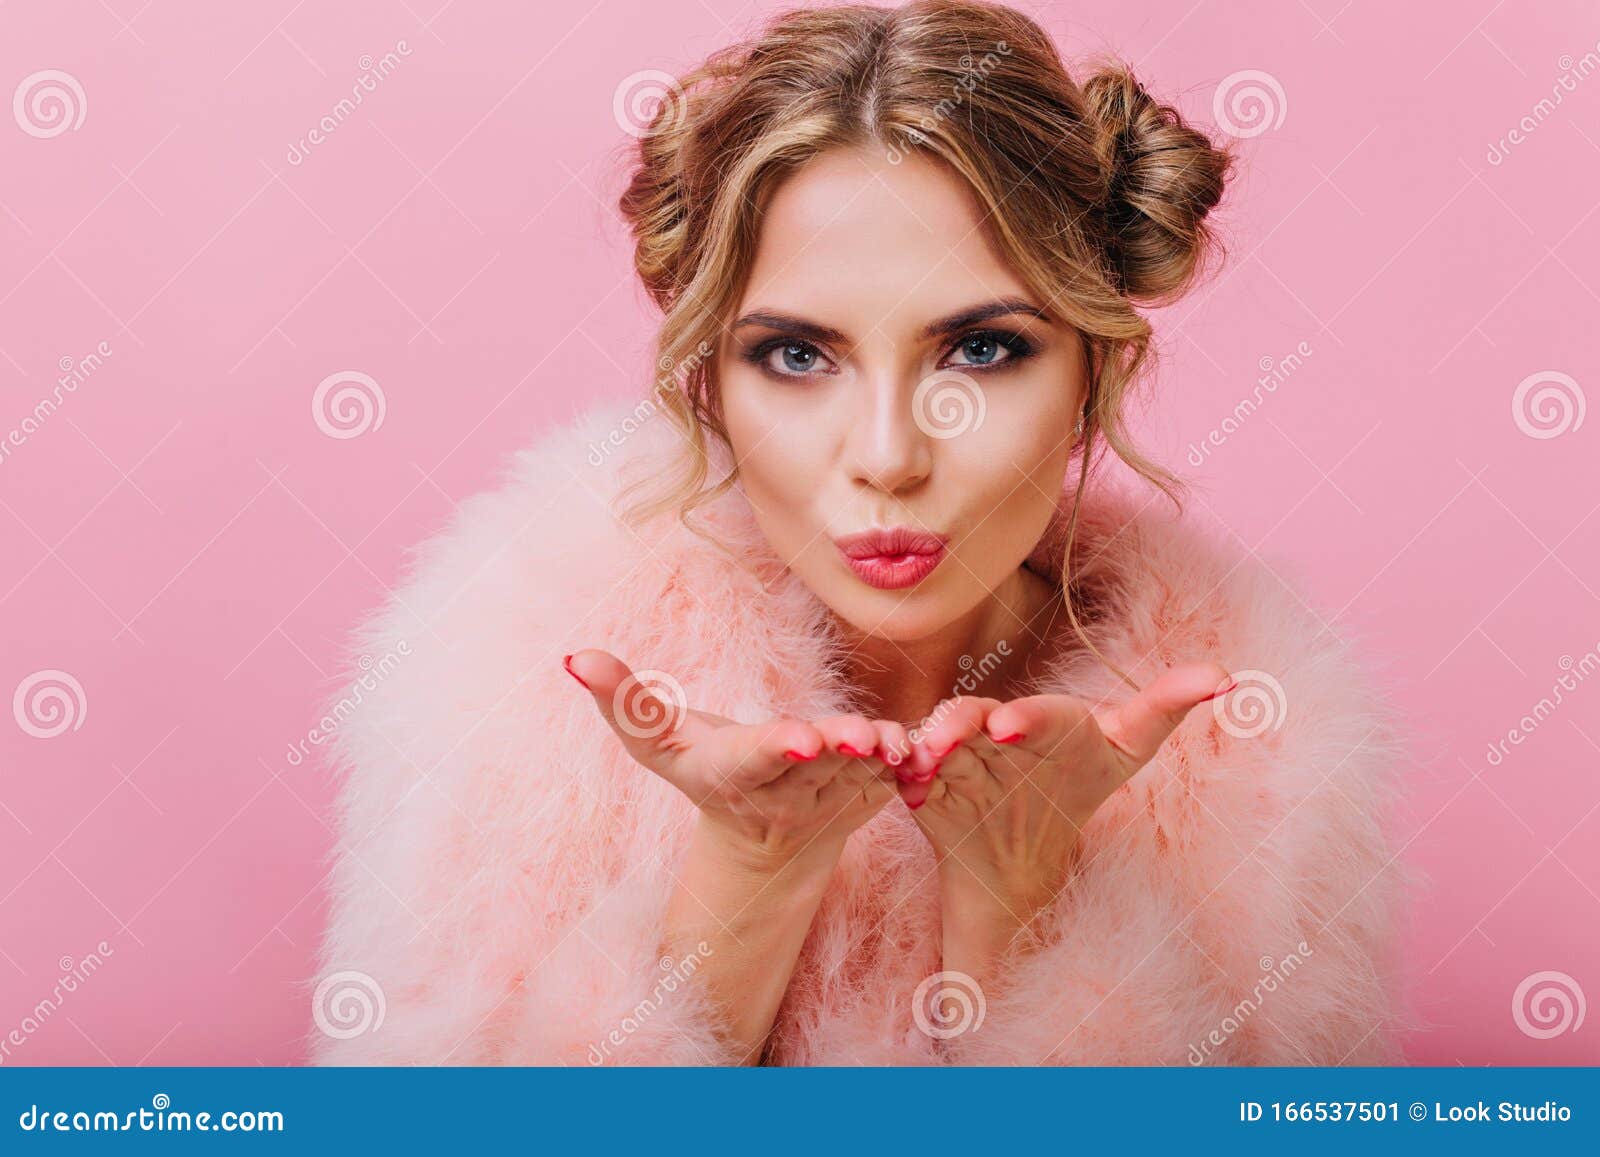 Retrato do modelo de menina bonita com maquiagem de noite e penteado  romântico, tocando a pele dela. lábios rosados